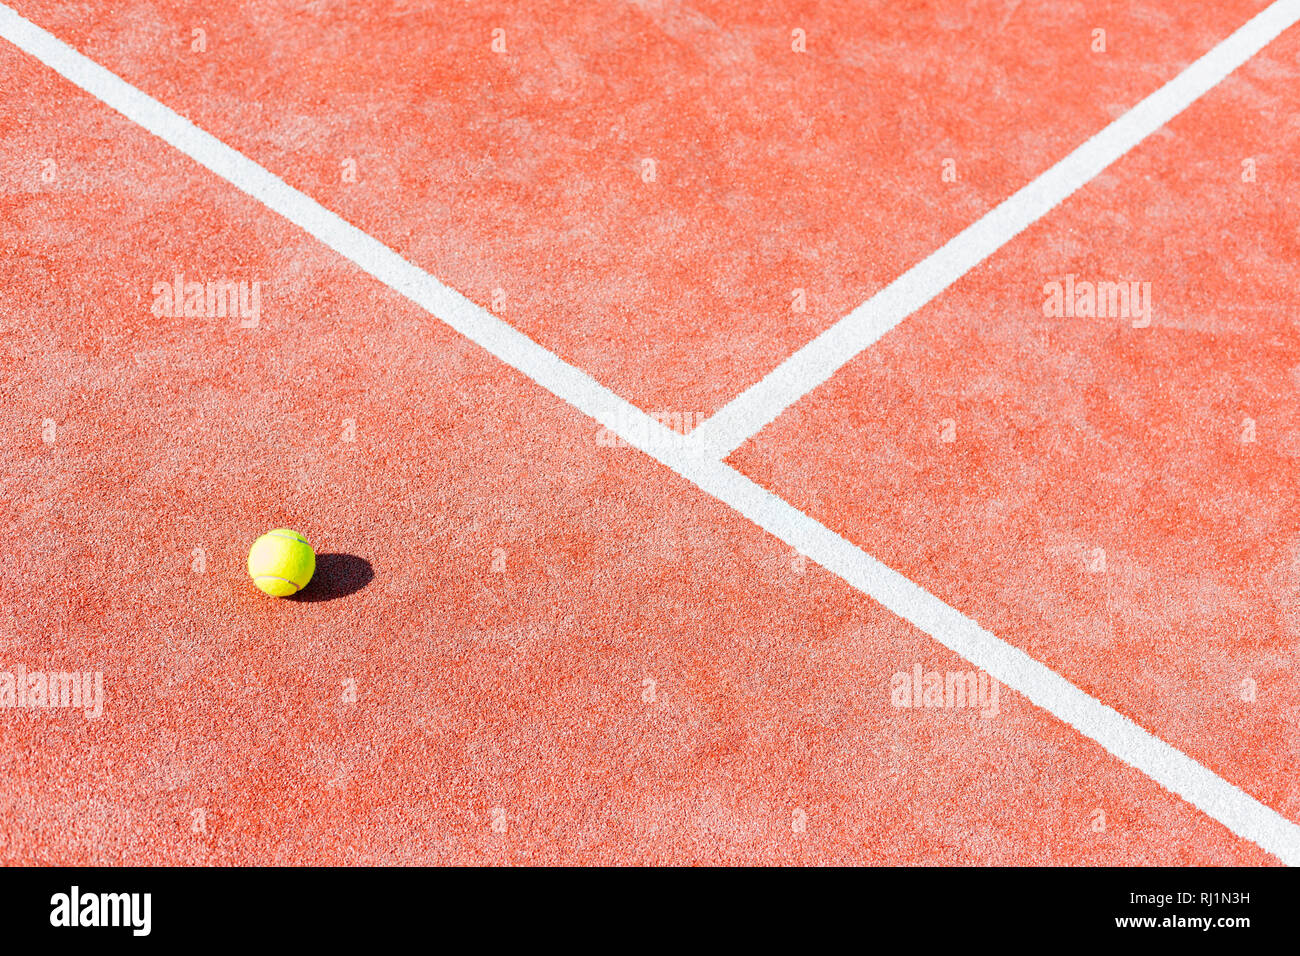 Portrait de balle de tennis sur red court au cours de journée ensoleillée Banque D'Images